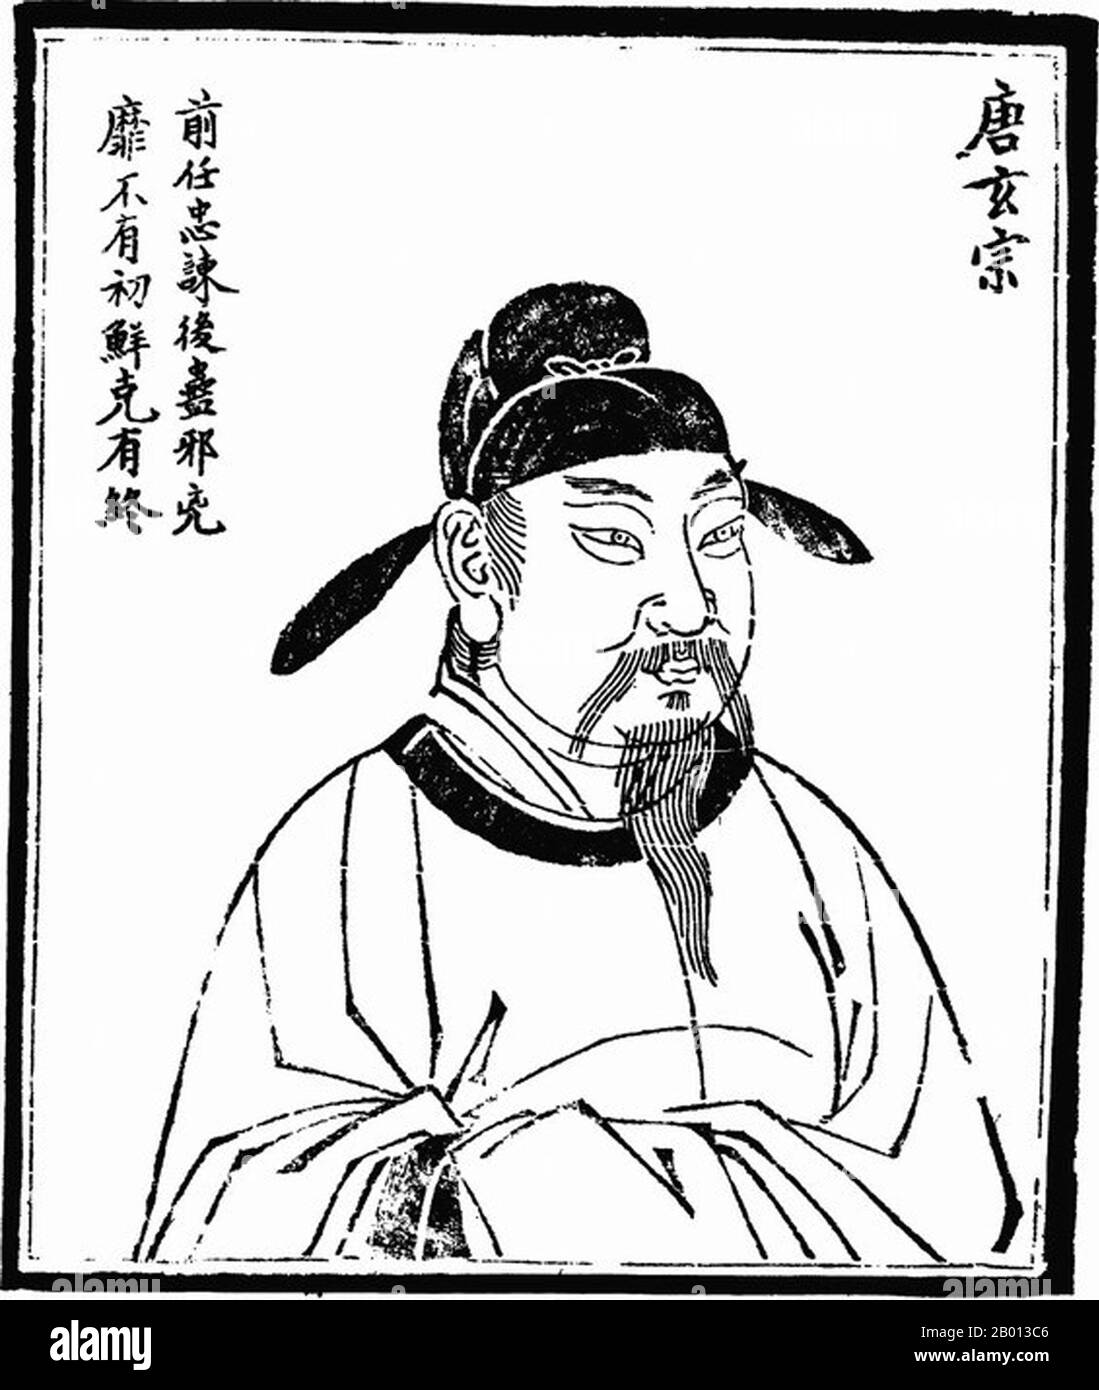 Cina: Imperatore Xuanzong (li Longji, 8 settembre 685-3 maggio 762), nono sovrano della dinastia Tang (r. 712-756). Verticale, c. 18 ° secolo. L'imperatore Xuanzong di Tang, conosciuto anche come Imperatore Ming di Tang (Tang Minghuang), nome personale li Longji, conosciuto come Wu Longji, fu il settimo imperatore della dinastia Tang in Cina. Il suo regno di 43 anni fu il più lungo durante la dinastia Tang. Nella prima metà del suo regno era un governante diligente e astuto, aiutato abilmente da cancellieri capaci come Yao Chong e Song Jing, e fu accreditato di portare la Cina di Tang ad un culmine della cultura e del potere. Foto Stock